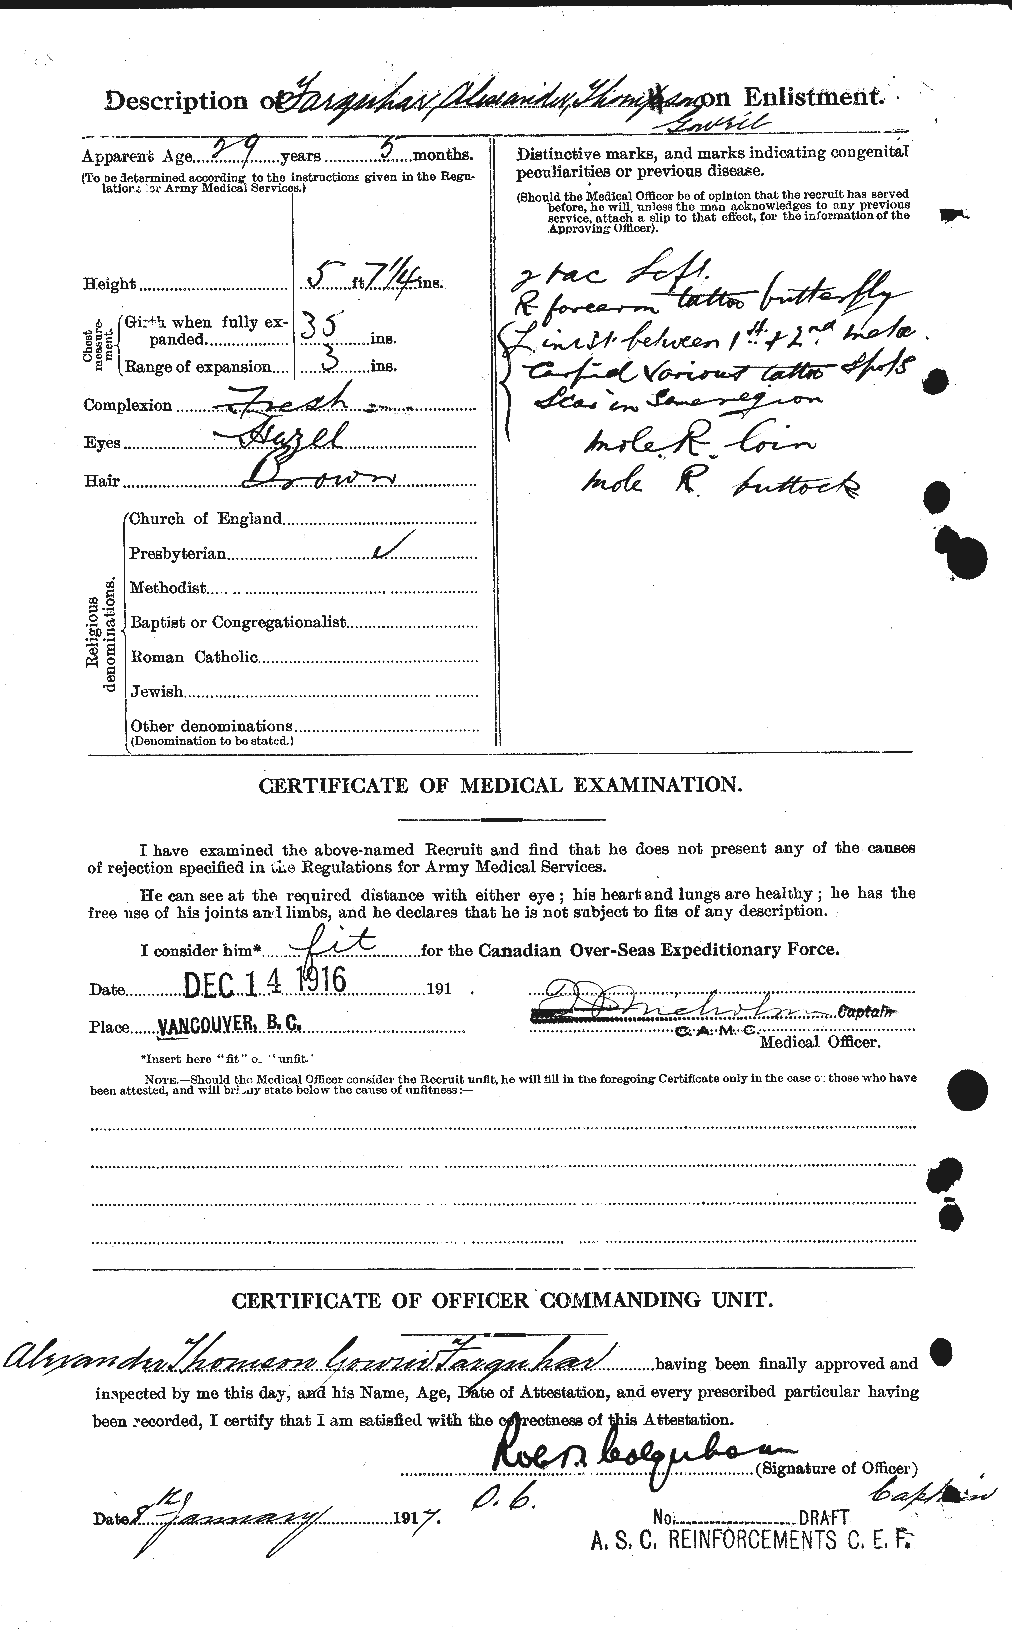 Dossiers du Personnel de la Première Guerre mondiale - CEC 318760b